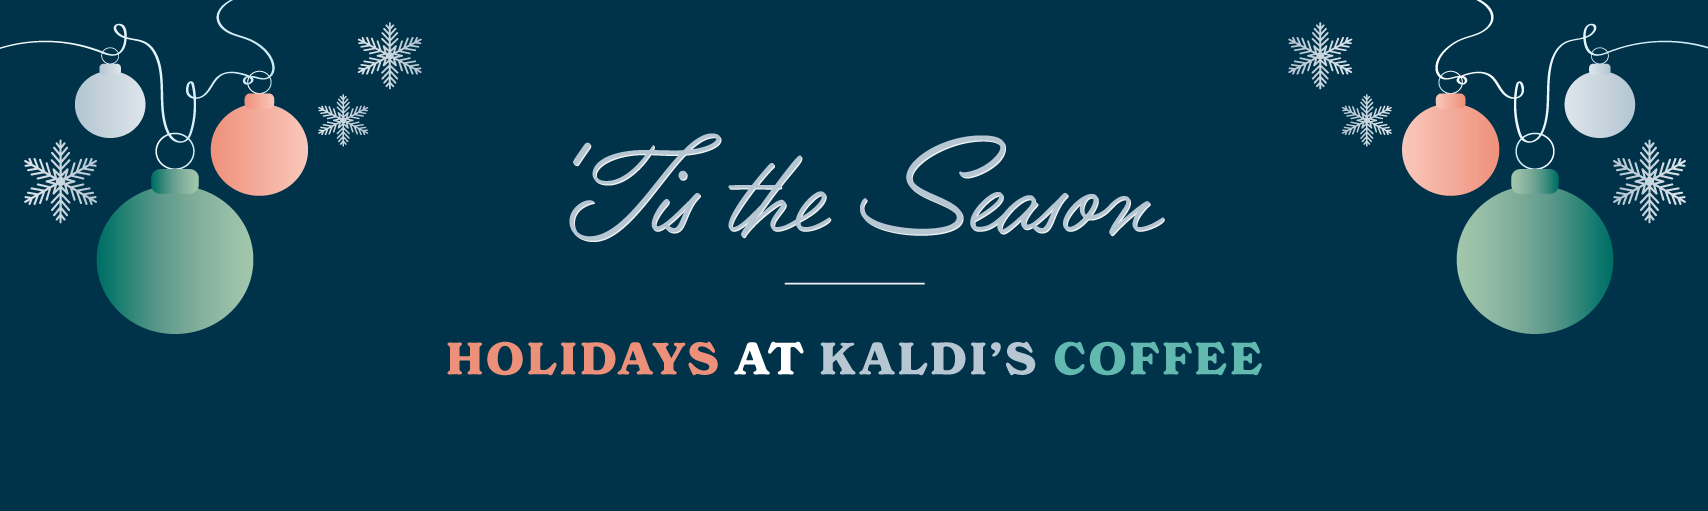 'TIS THE SEASON - HOLIDAYS AT KALDI'S COFFEE